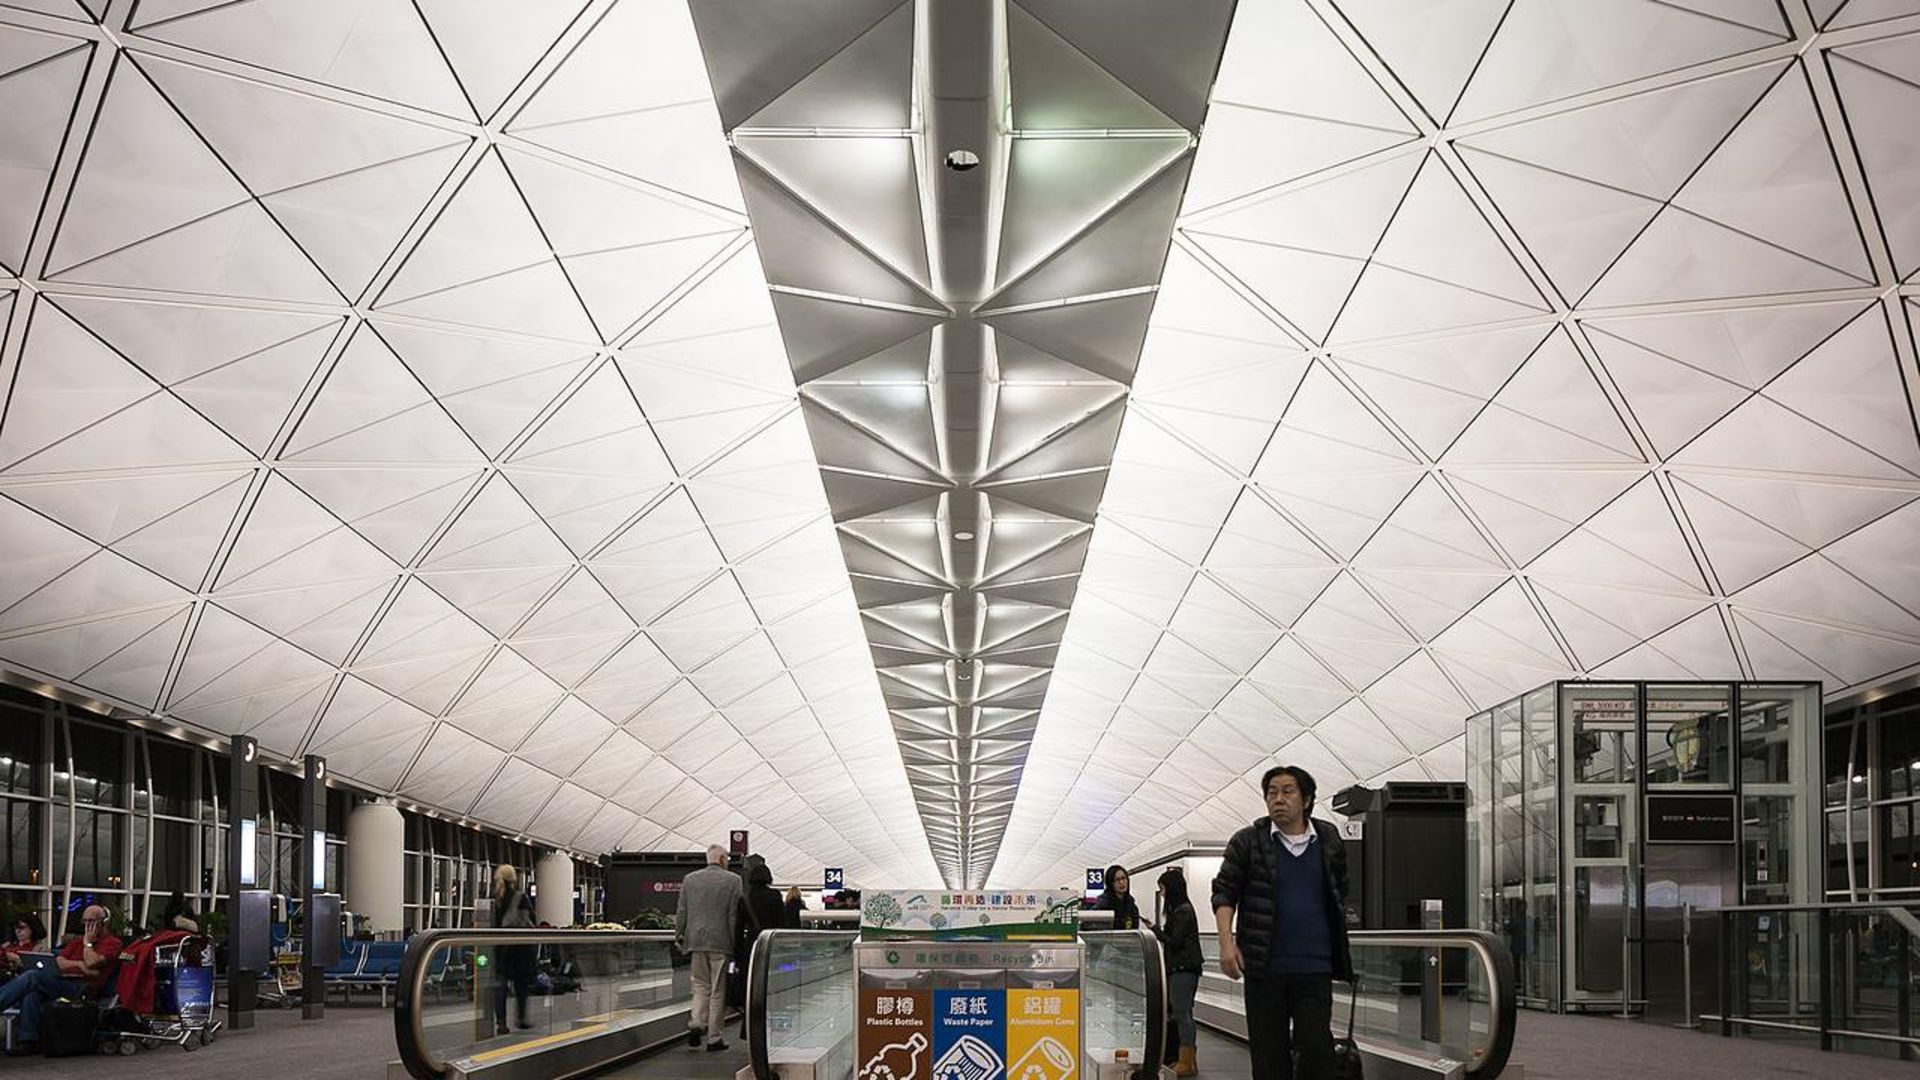 فرودگاه بین المللی هنگ کنگ (HKIA)